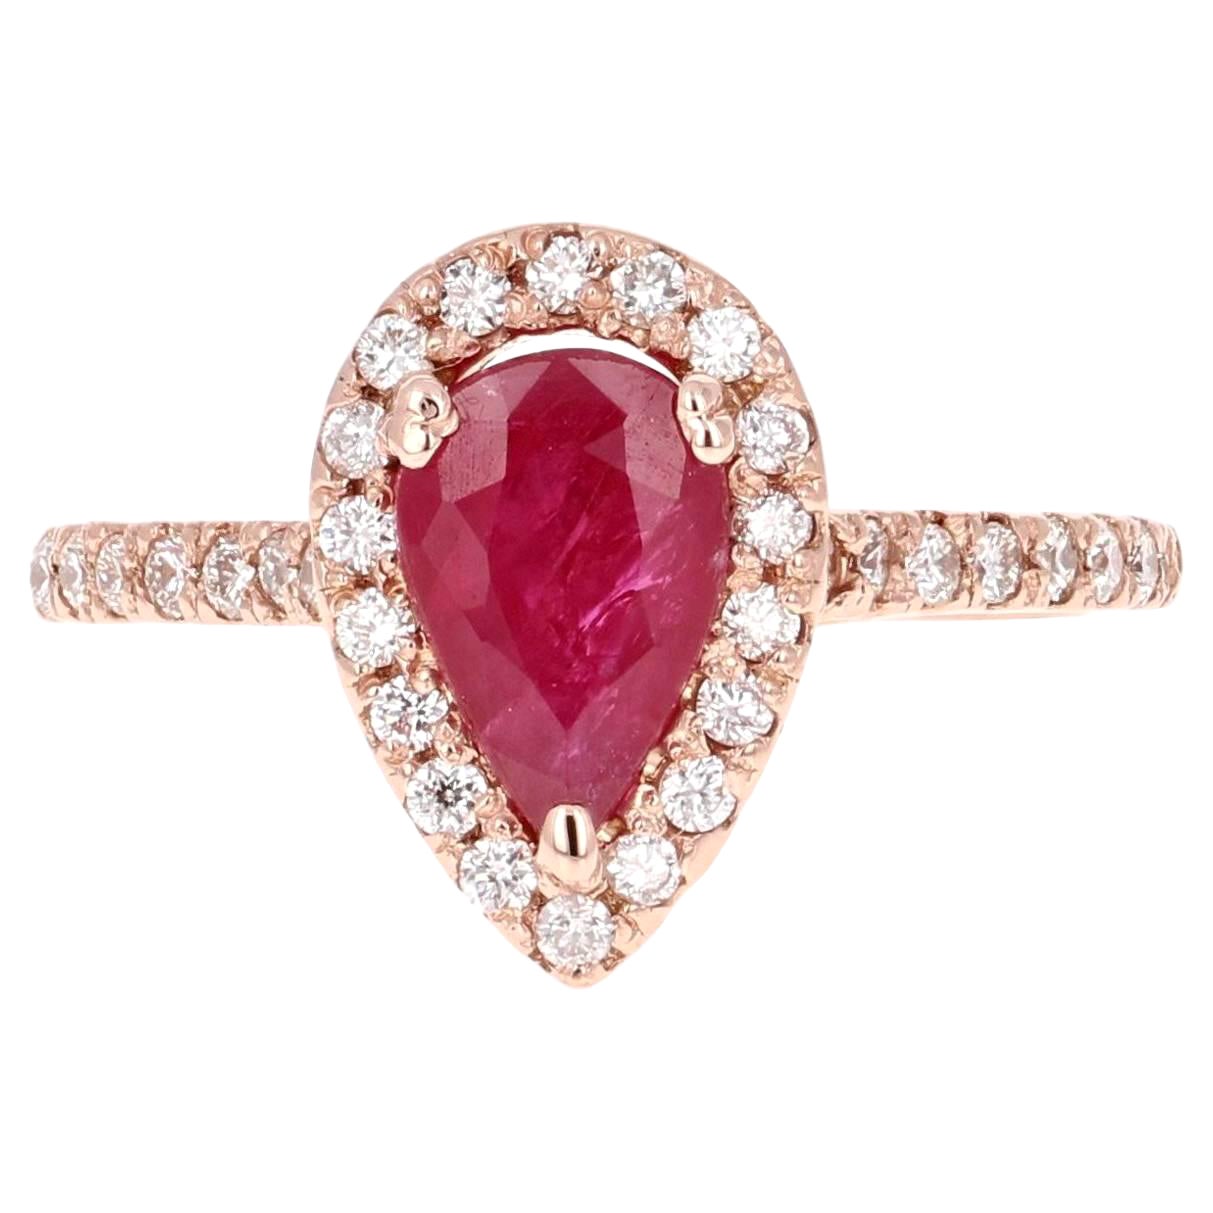 2.21 Carat Ruby Diamond 14 Karat Rose Gold Engagement Ring